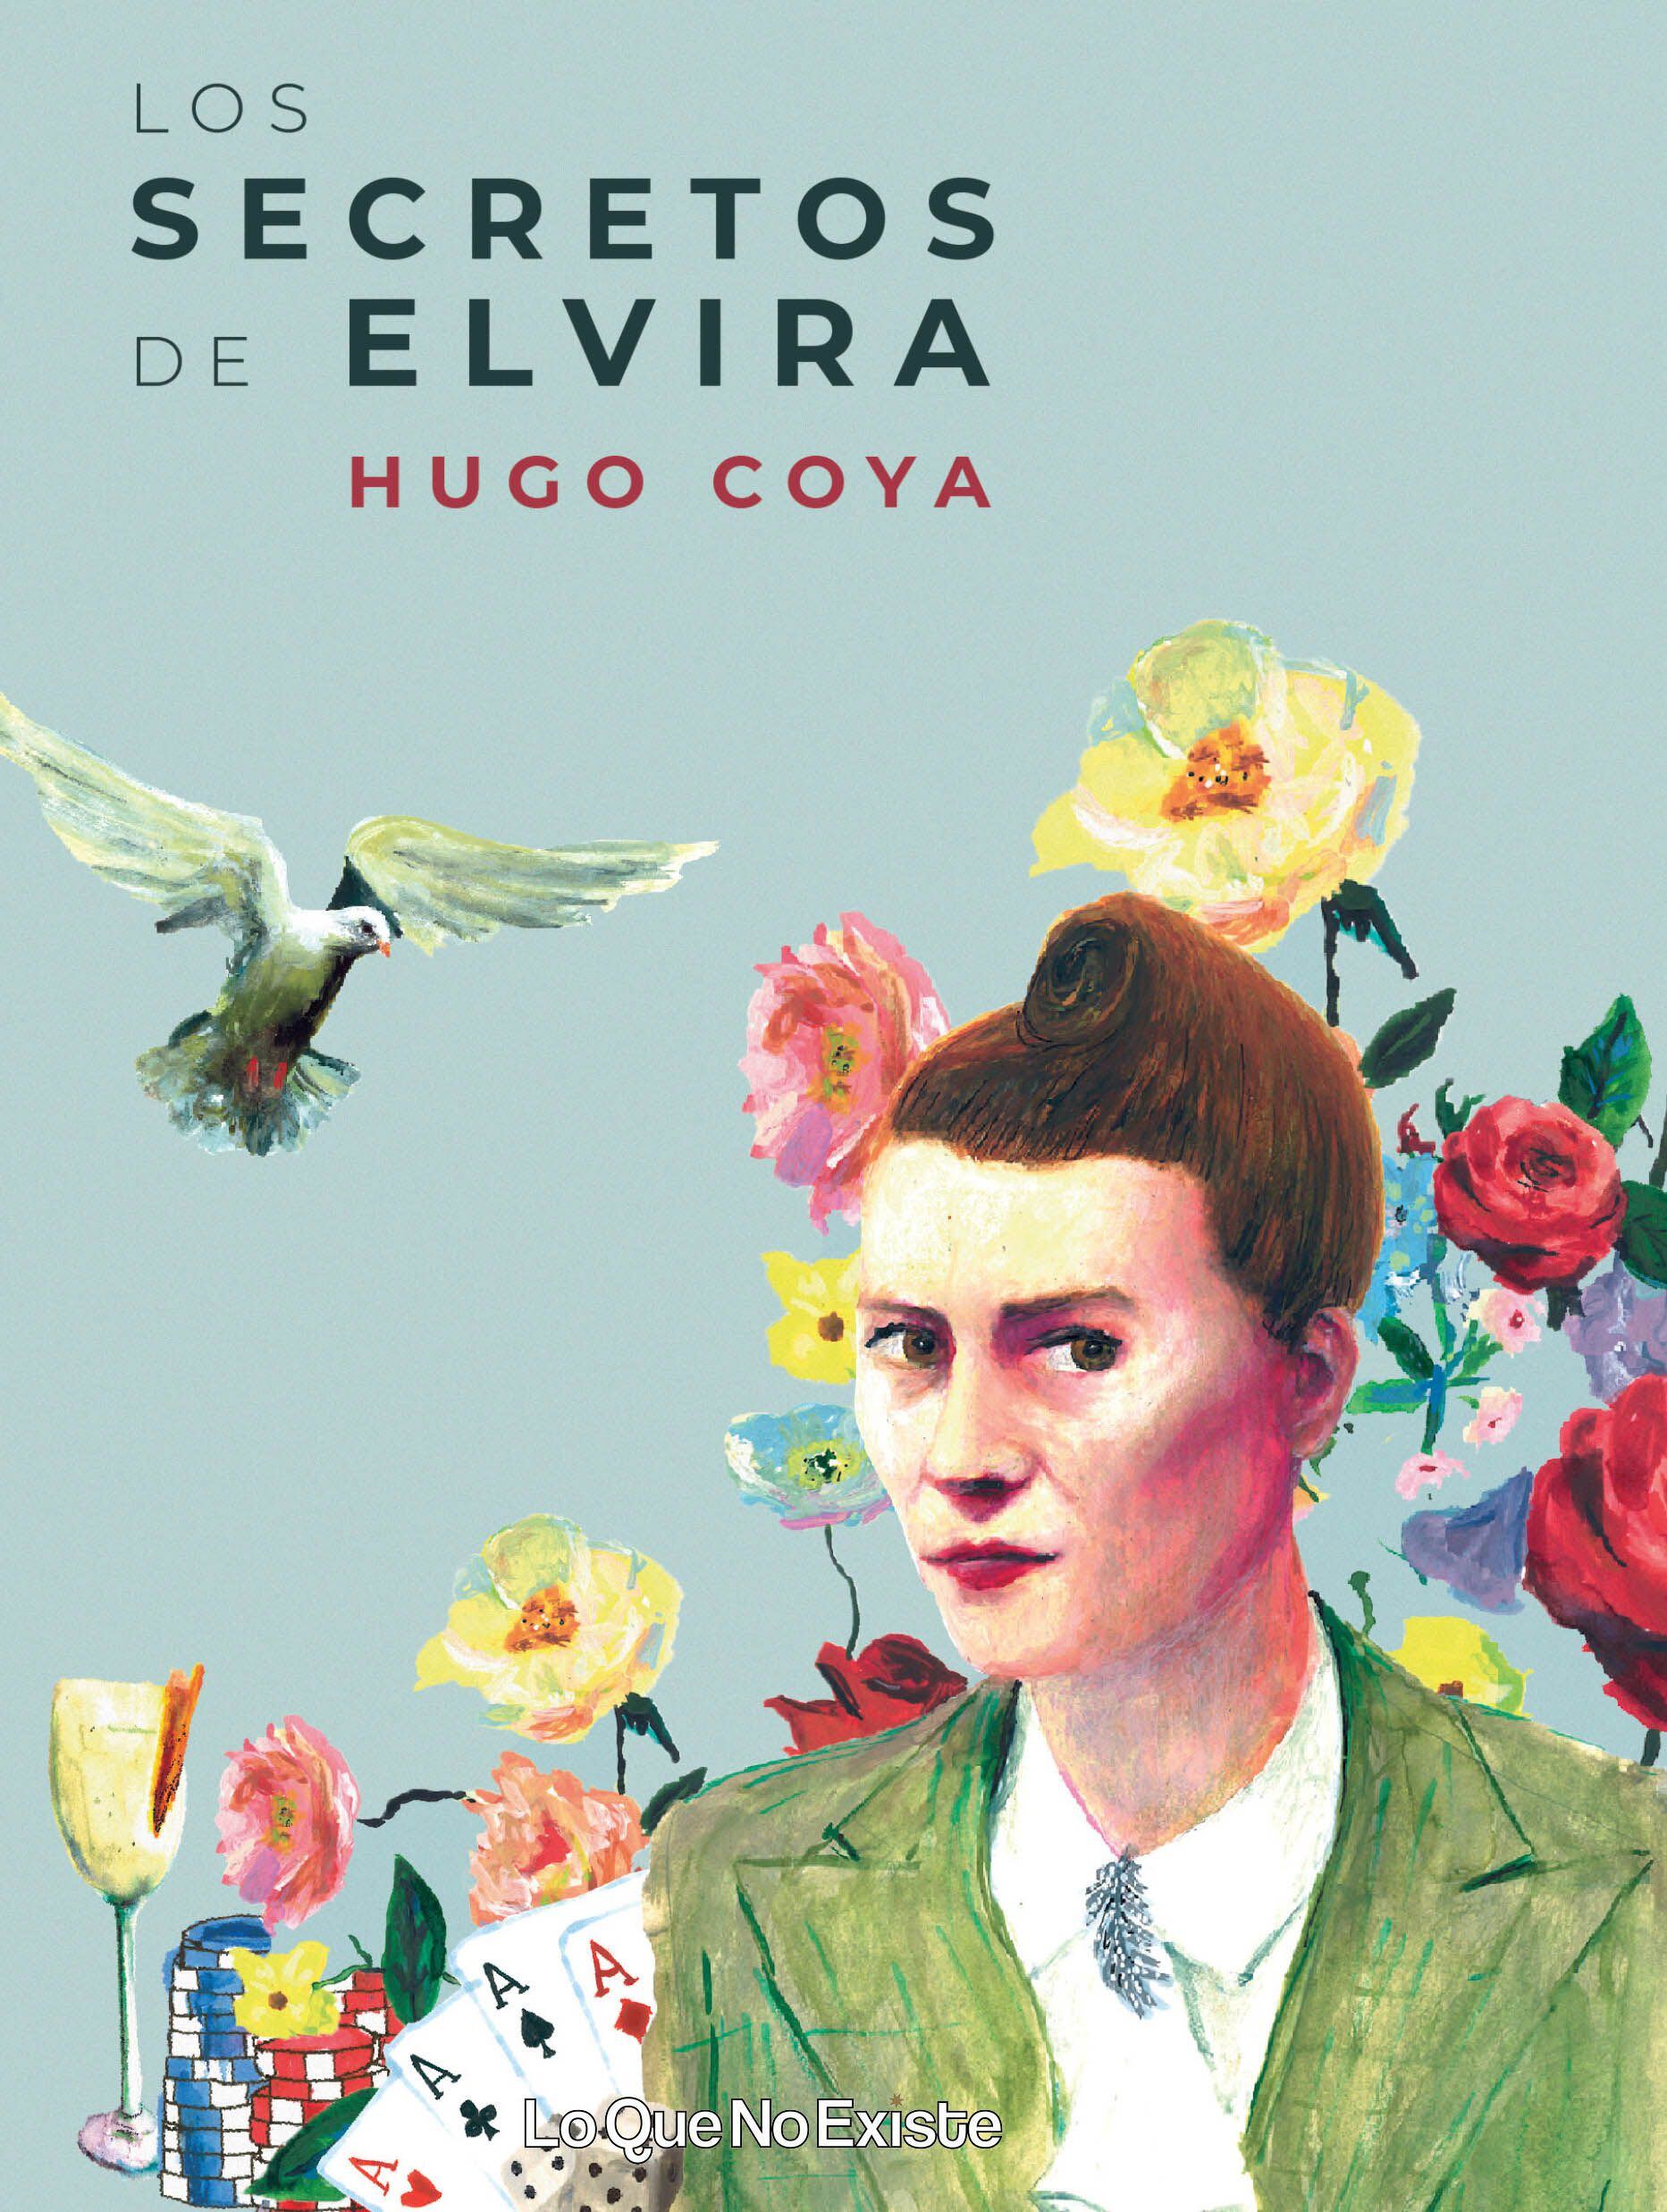 Portada del libro "Los secretos de Elvira" del periodista Hugo Coya.